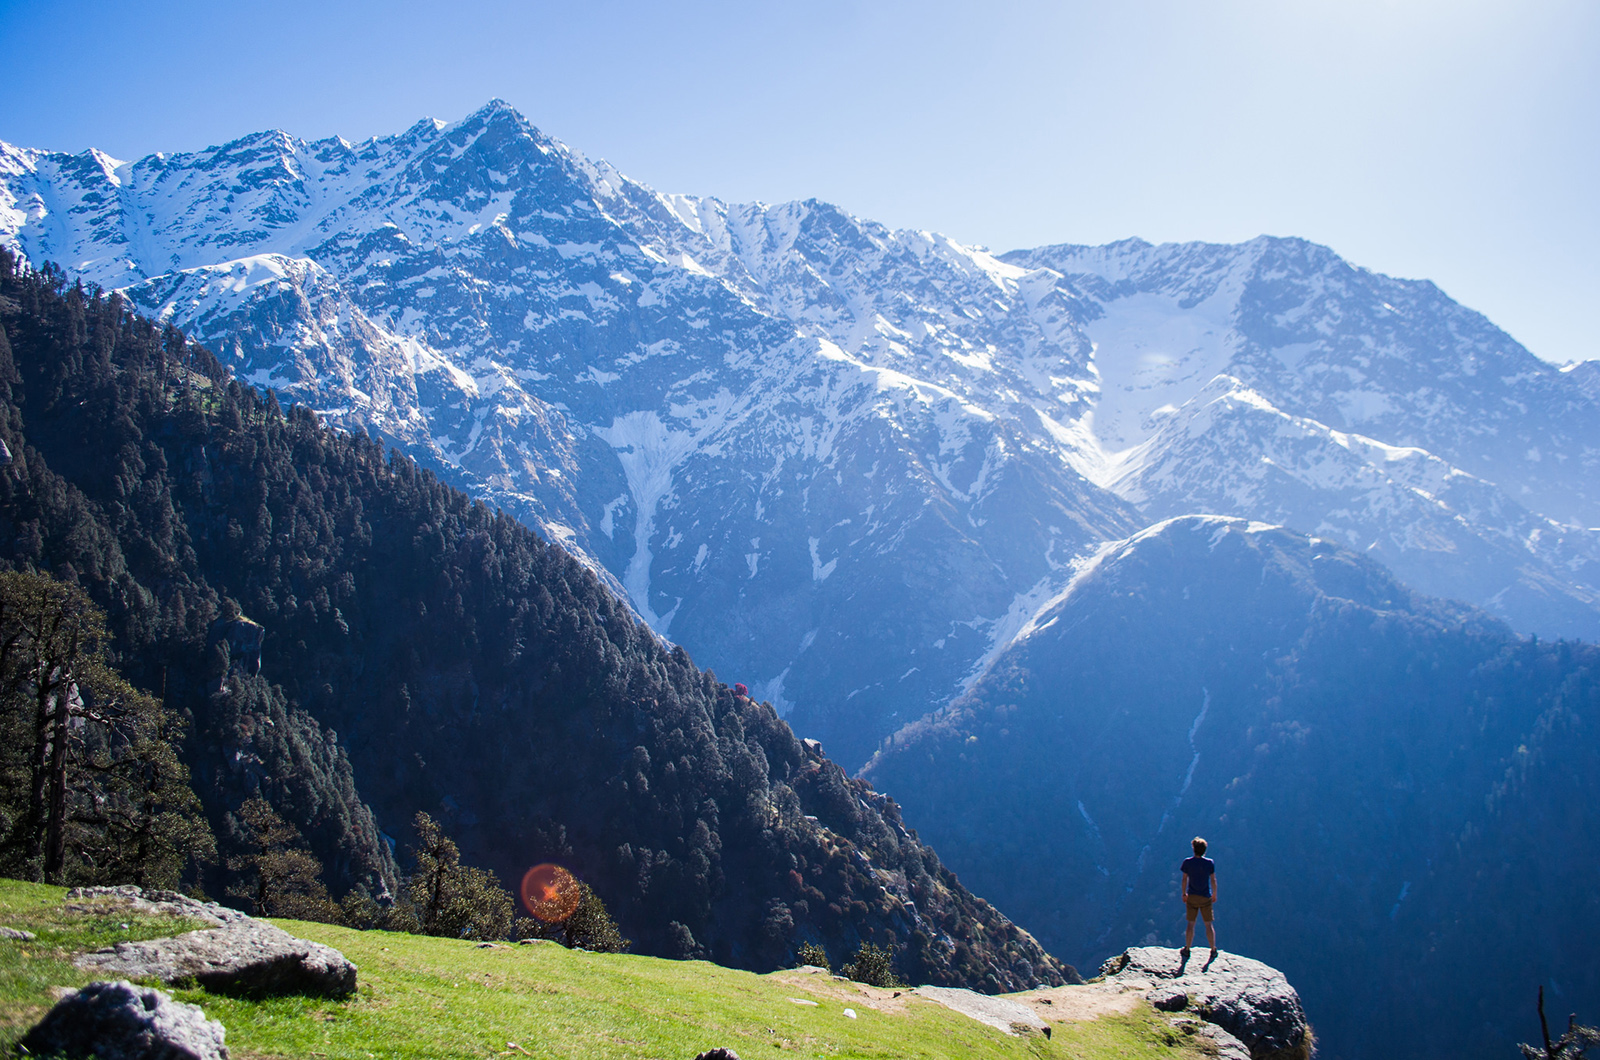 Гималаи – место вдохновения Николай Рериха и многих сегодняшних путешественников